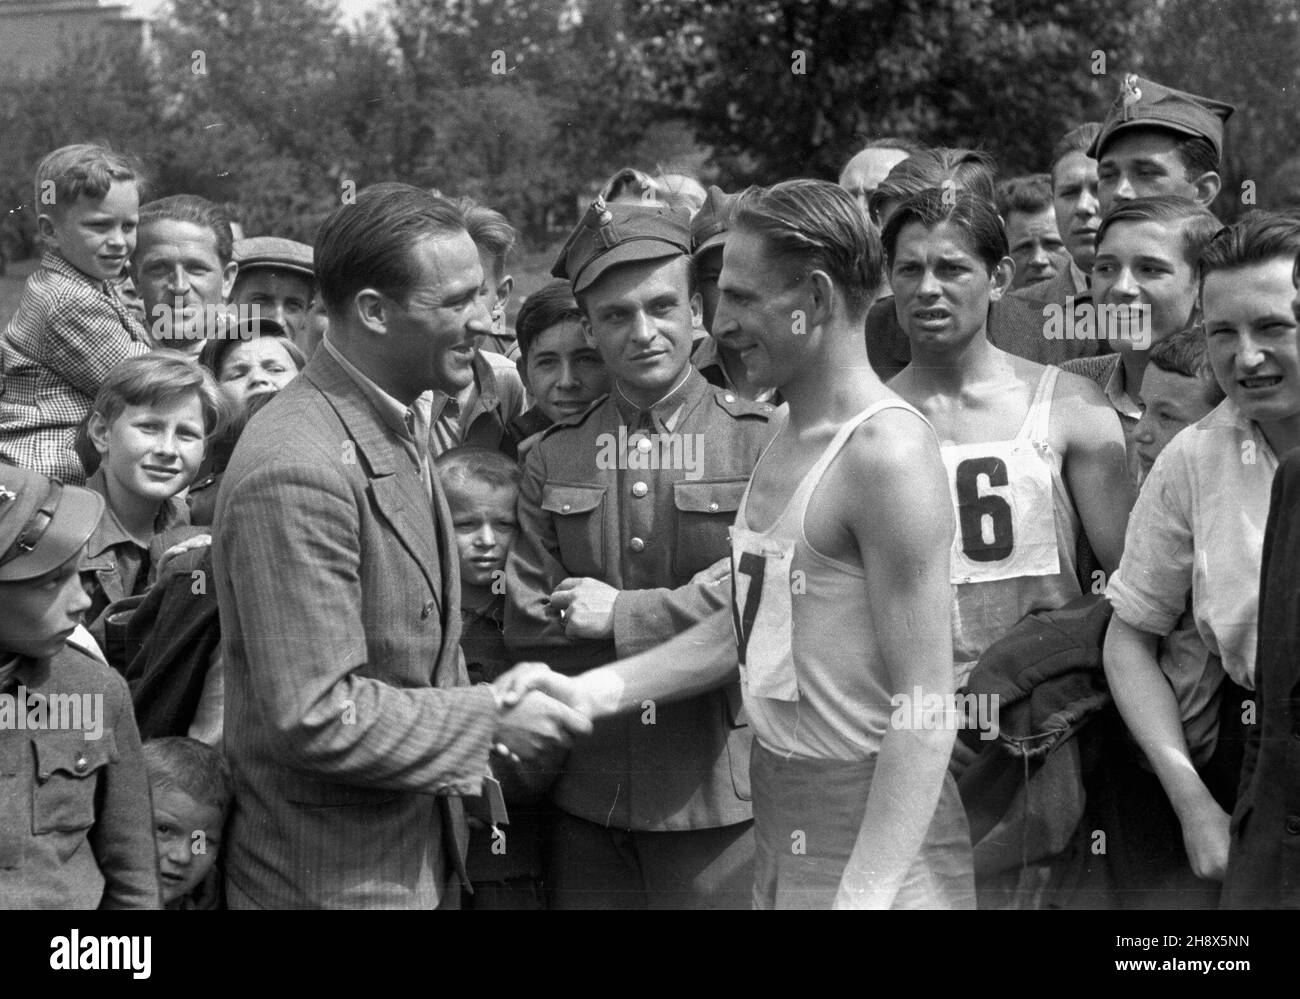 Warszawa, 1946. Biegacze na mecie. ps/pp  PAP/Stanis³aw D¹browiecki      Warsaw, 1946. Racers on the finishing line.  ps/pp  PAP/Stanislaw Dabrowiecki Stock Photo